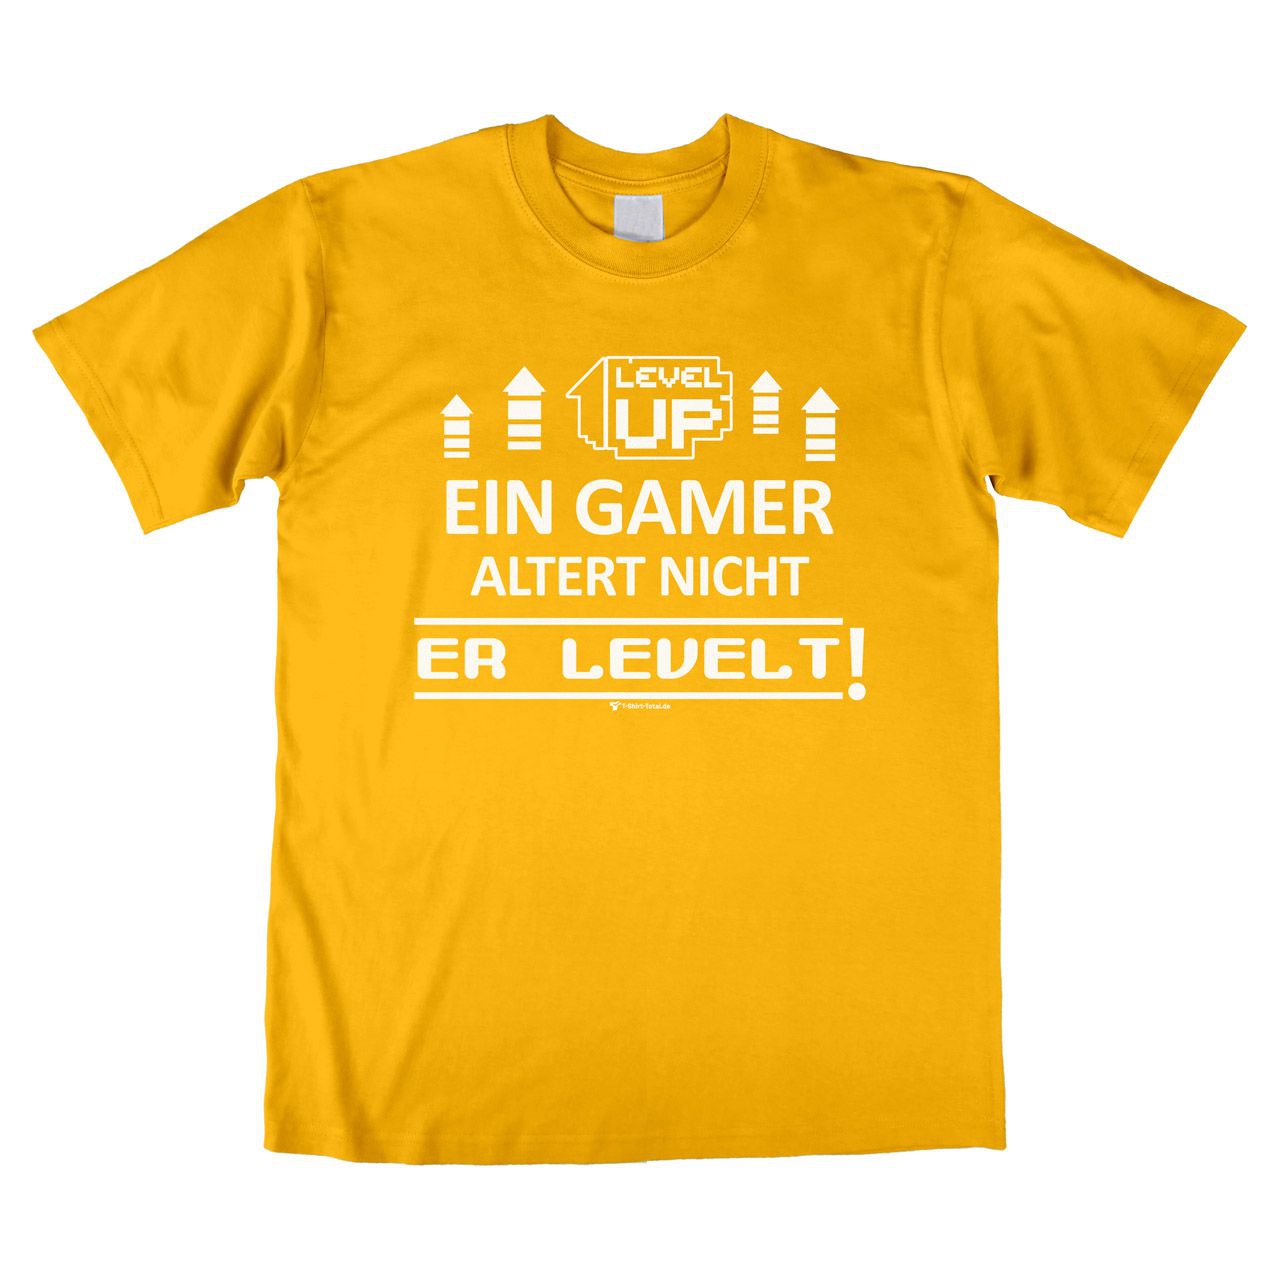 Ein Gamer levelt Unisex T-Shirt gelb Medium